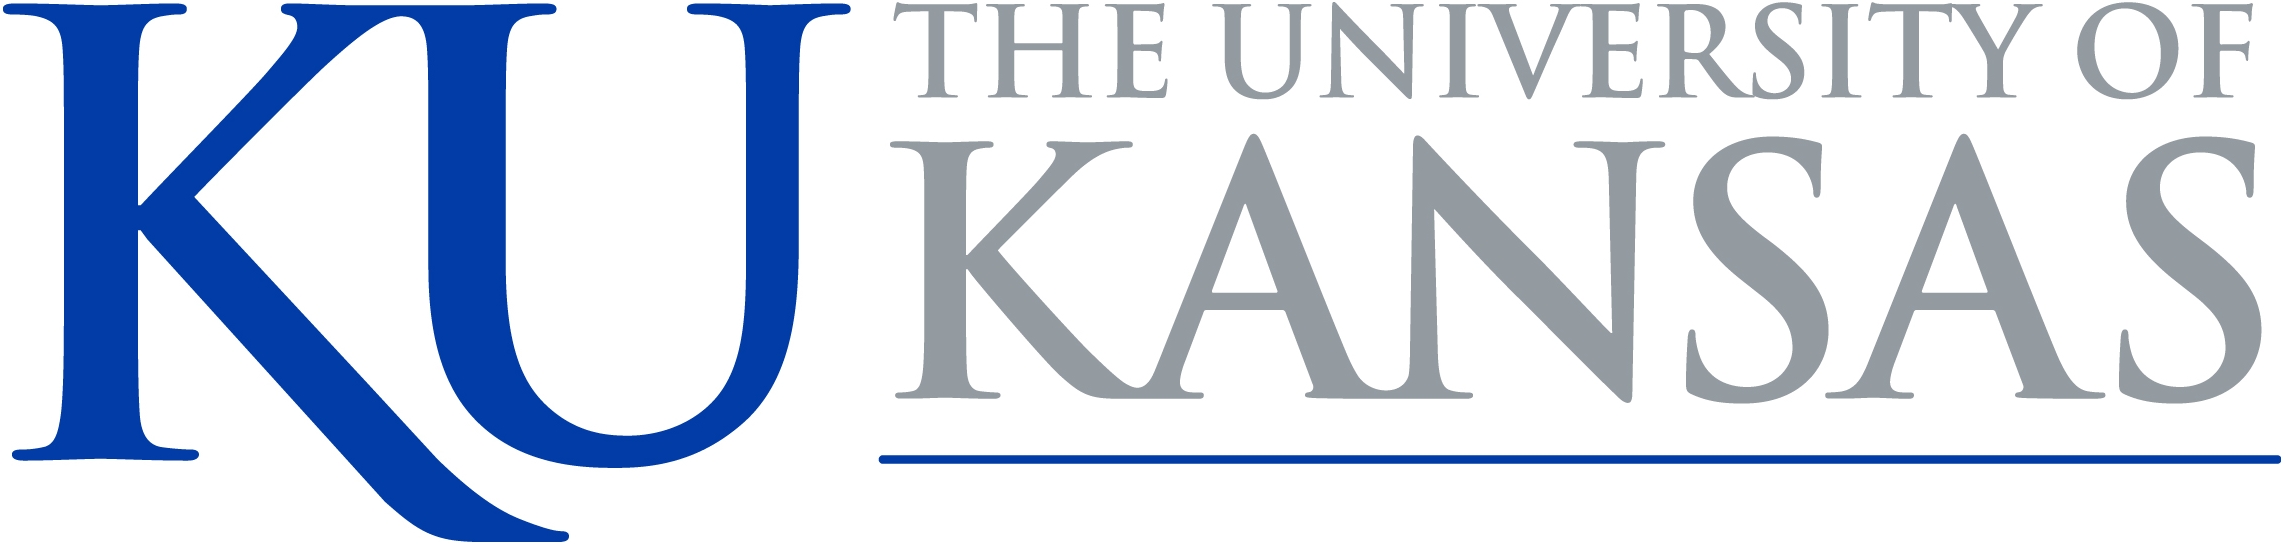 university-of-kansas-ku-logo.jpg